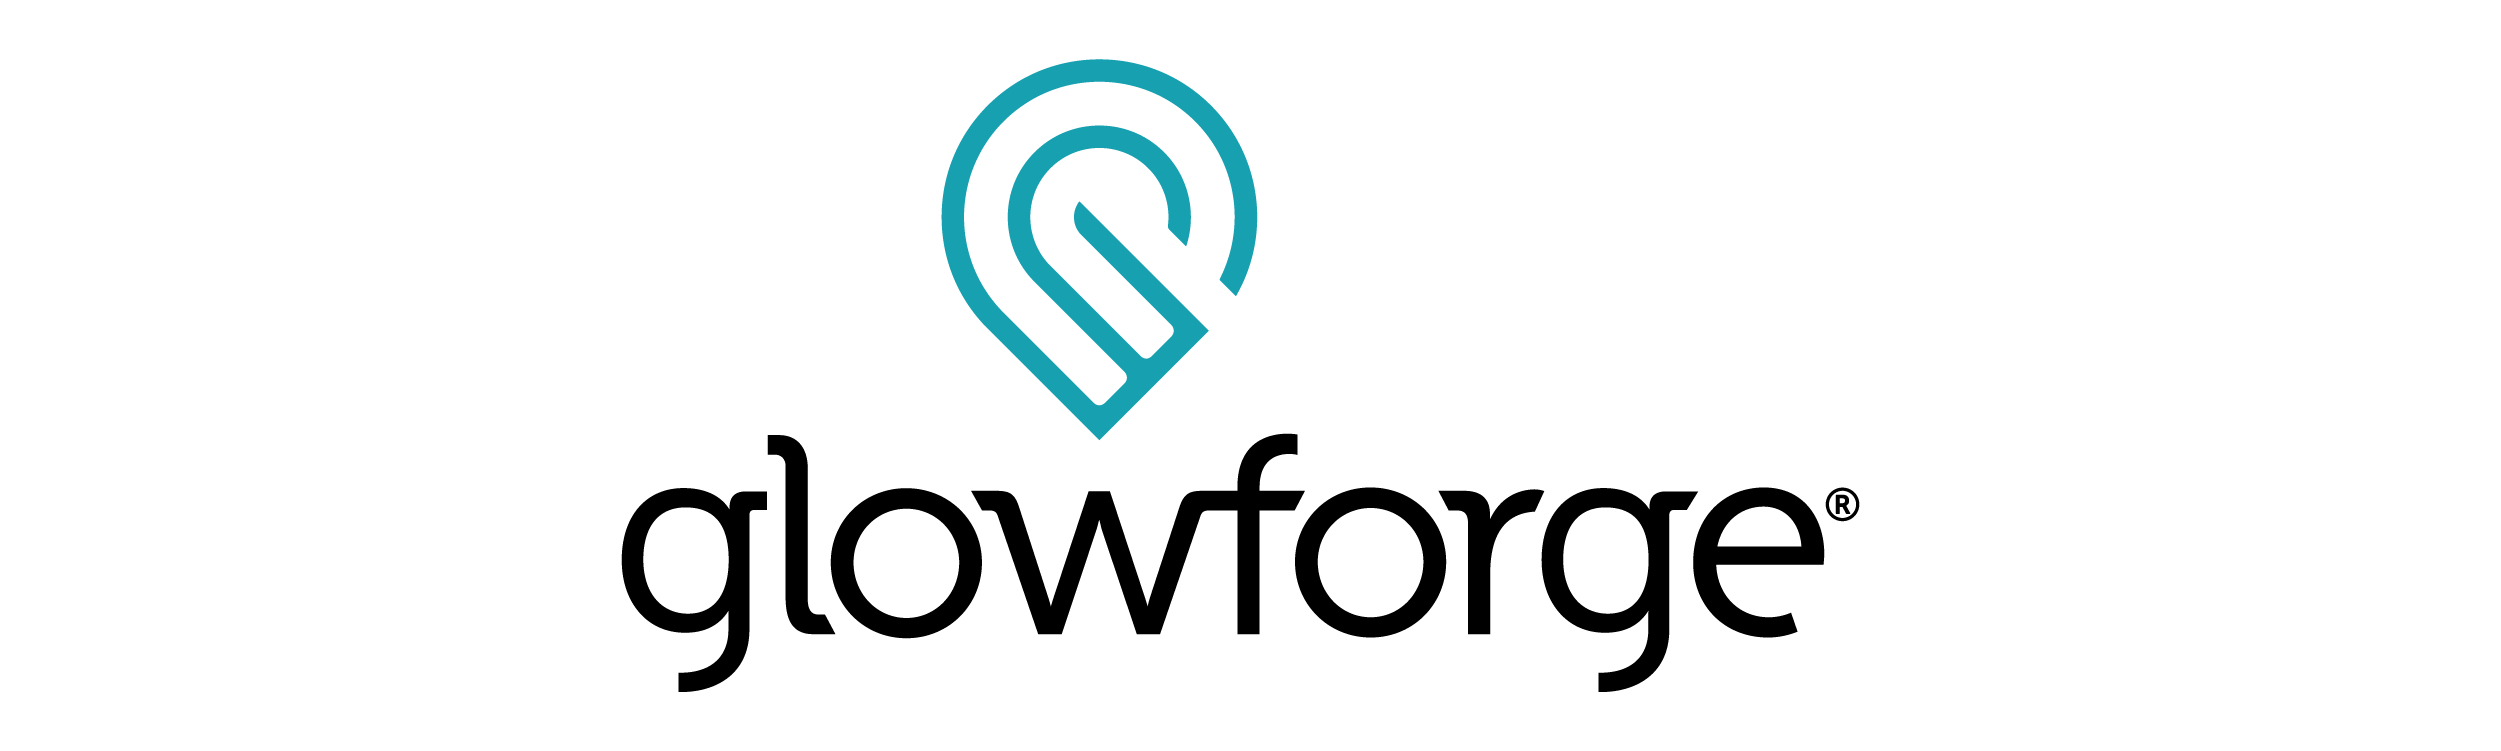 Glowforge Logo